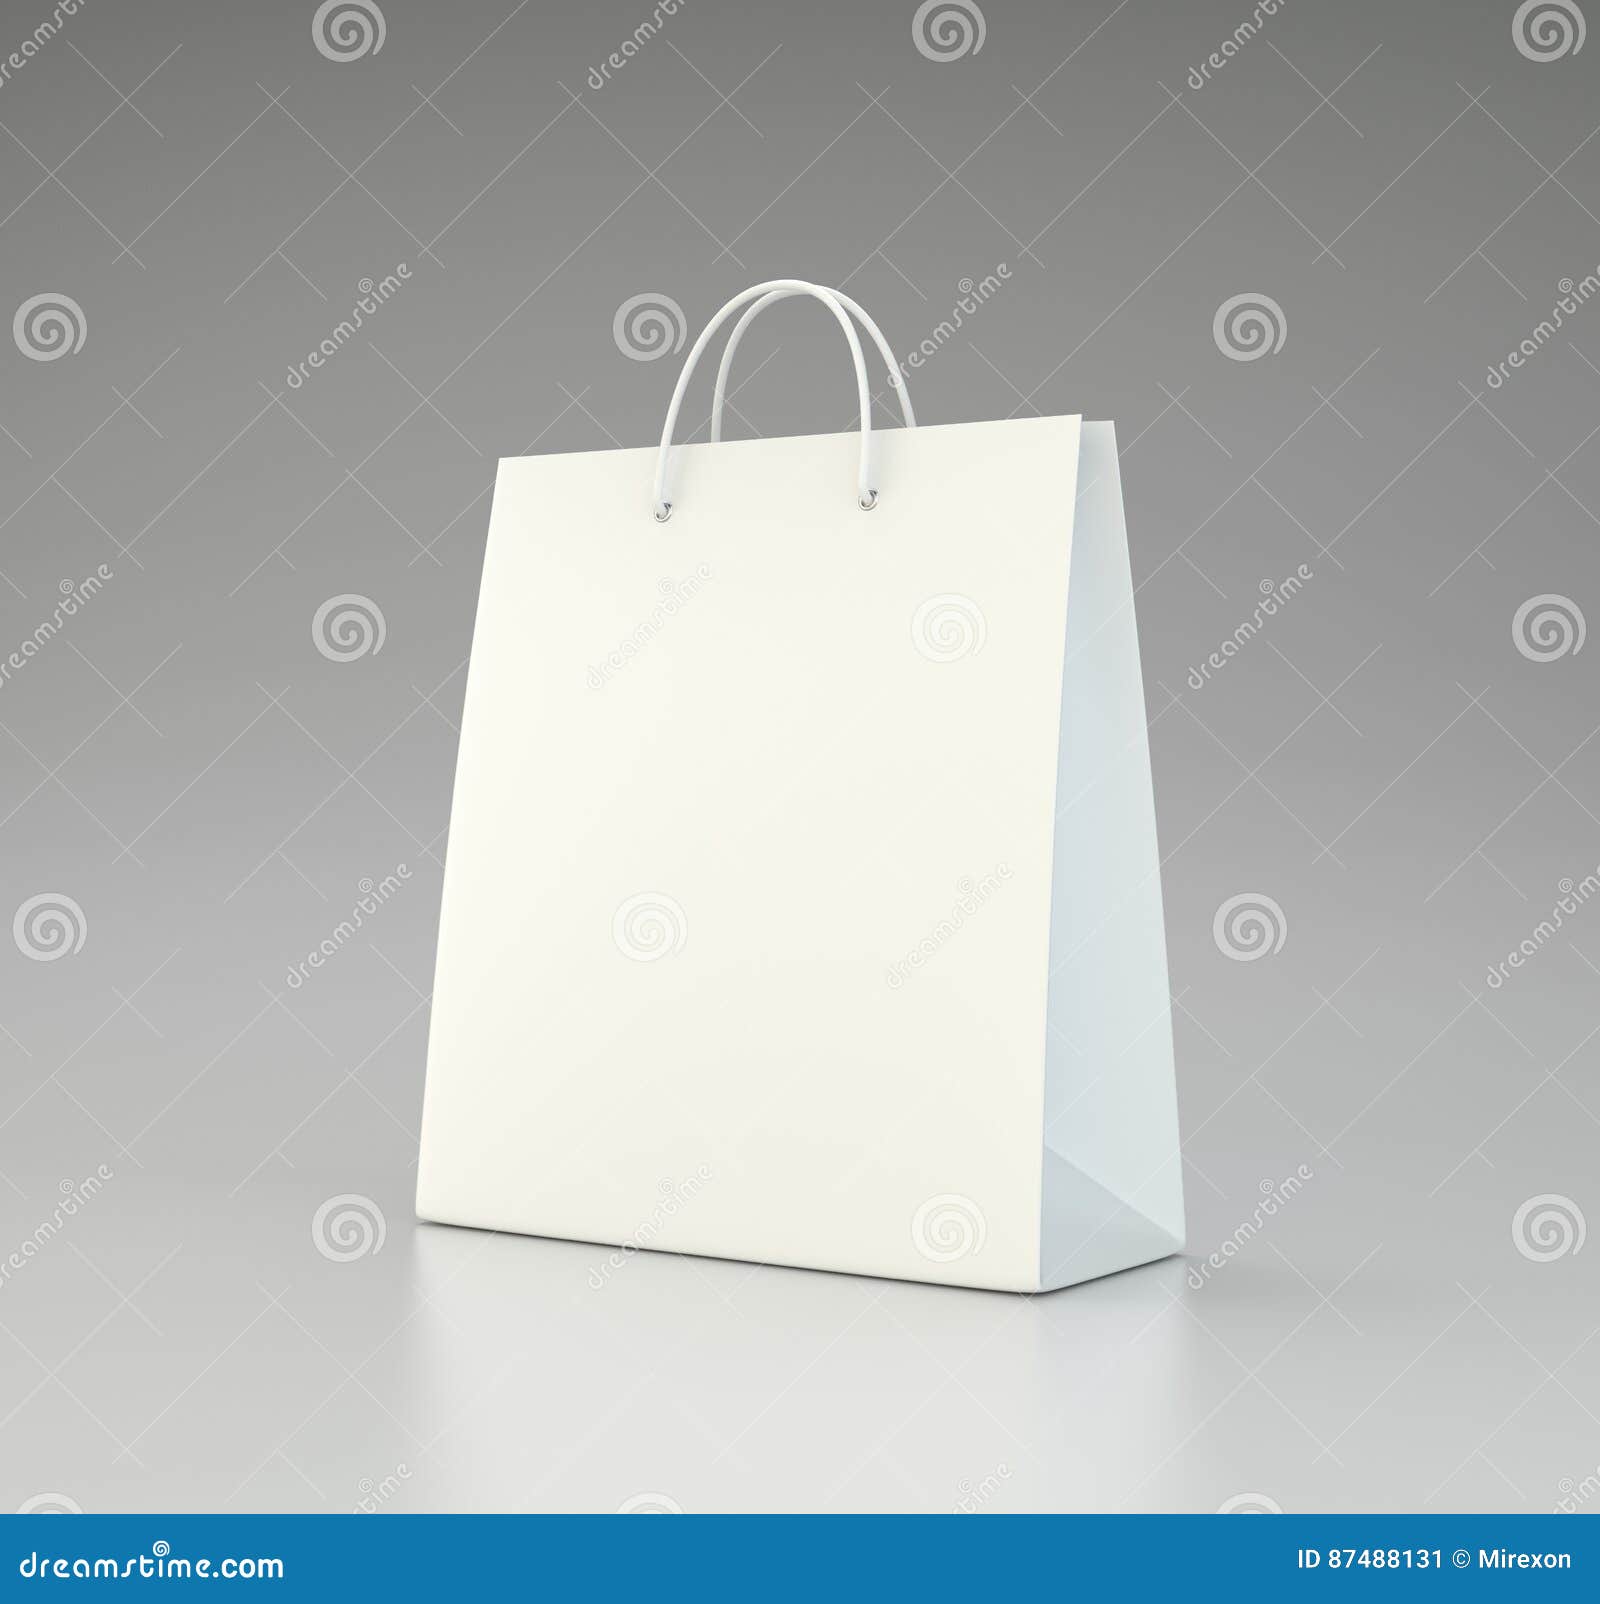 Paper Bag Model For Applying Branding Stock Illustration